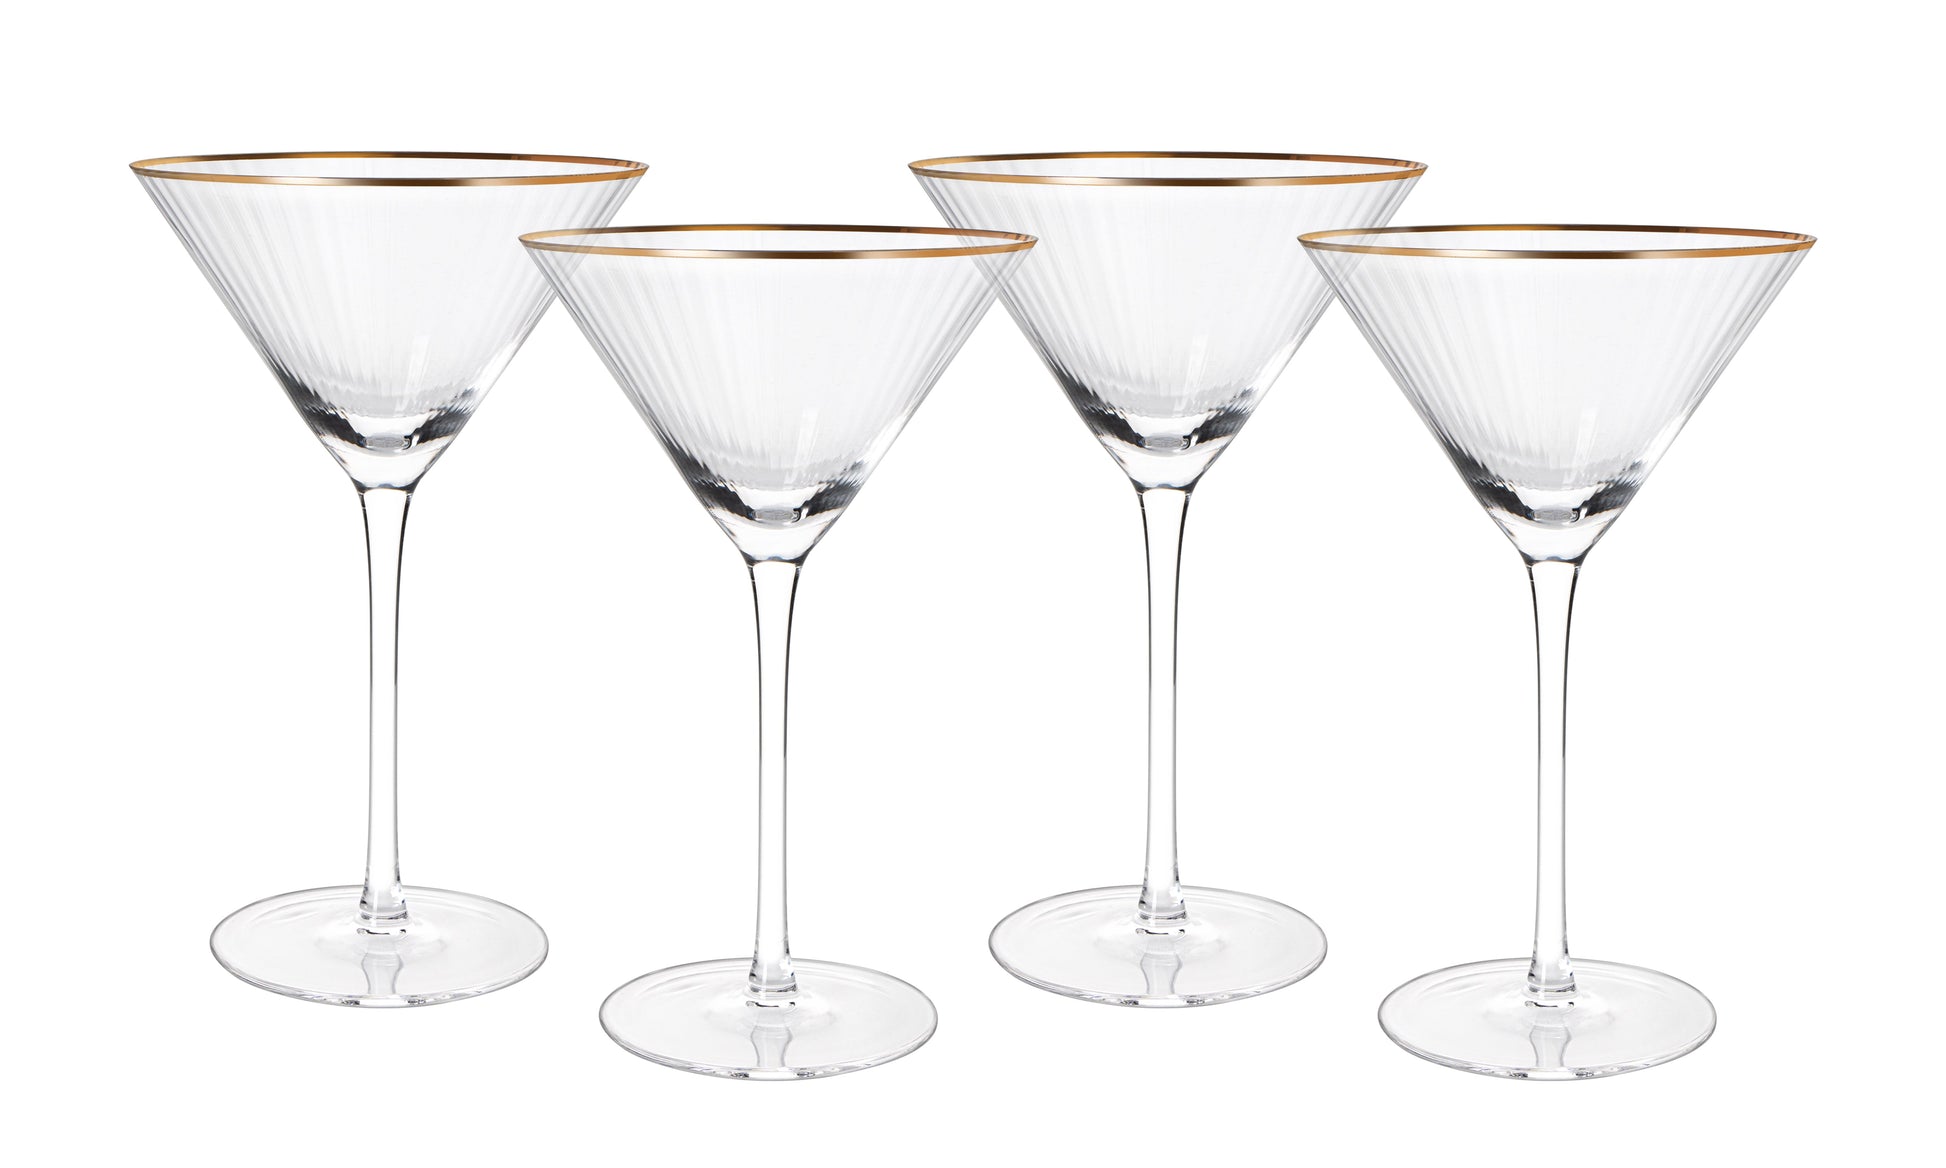 Gold Rim Martini Glasses, Set of 4